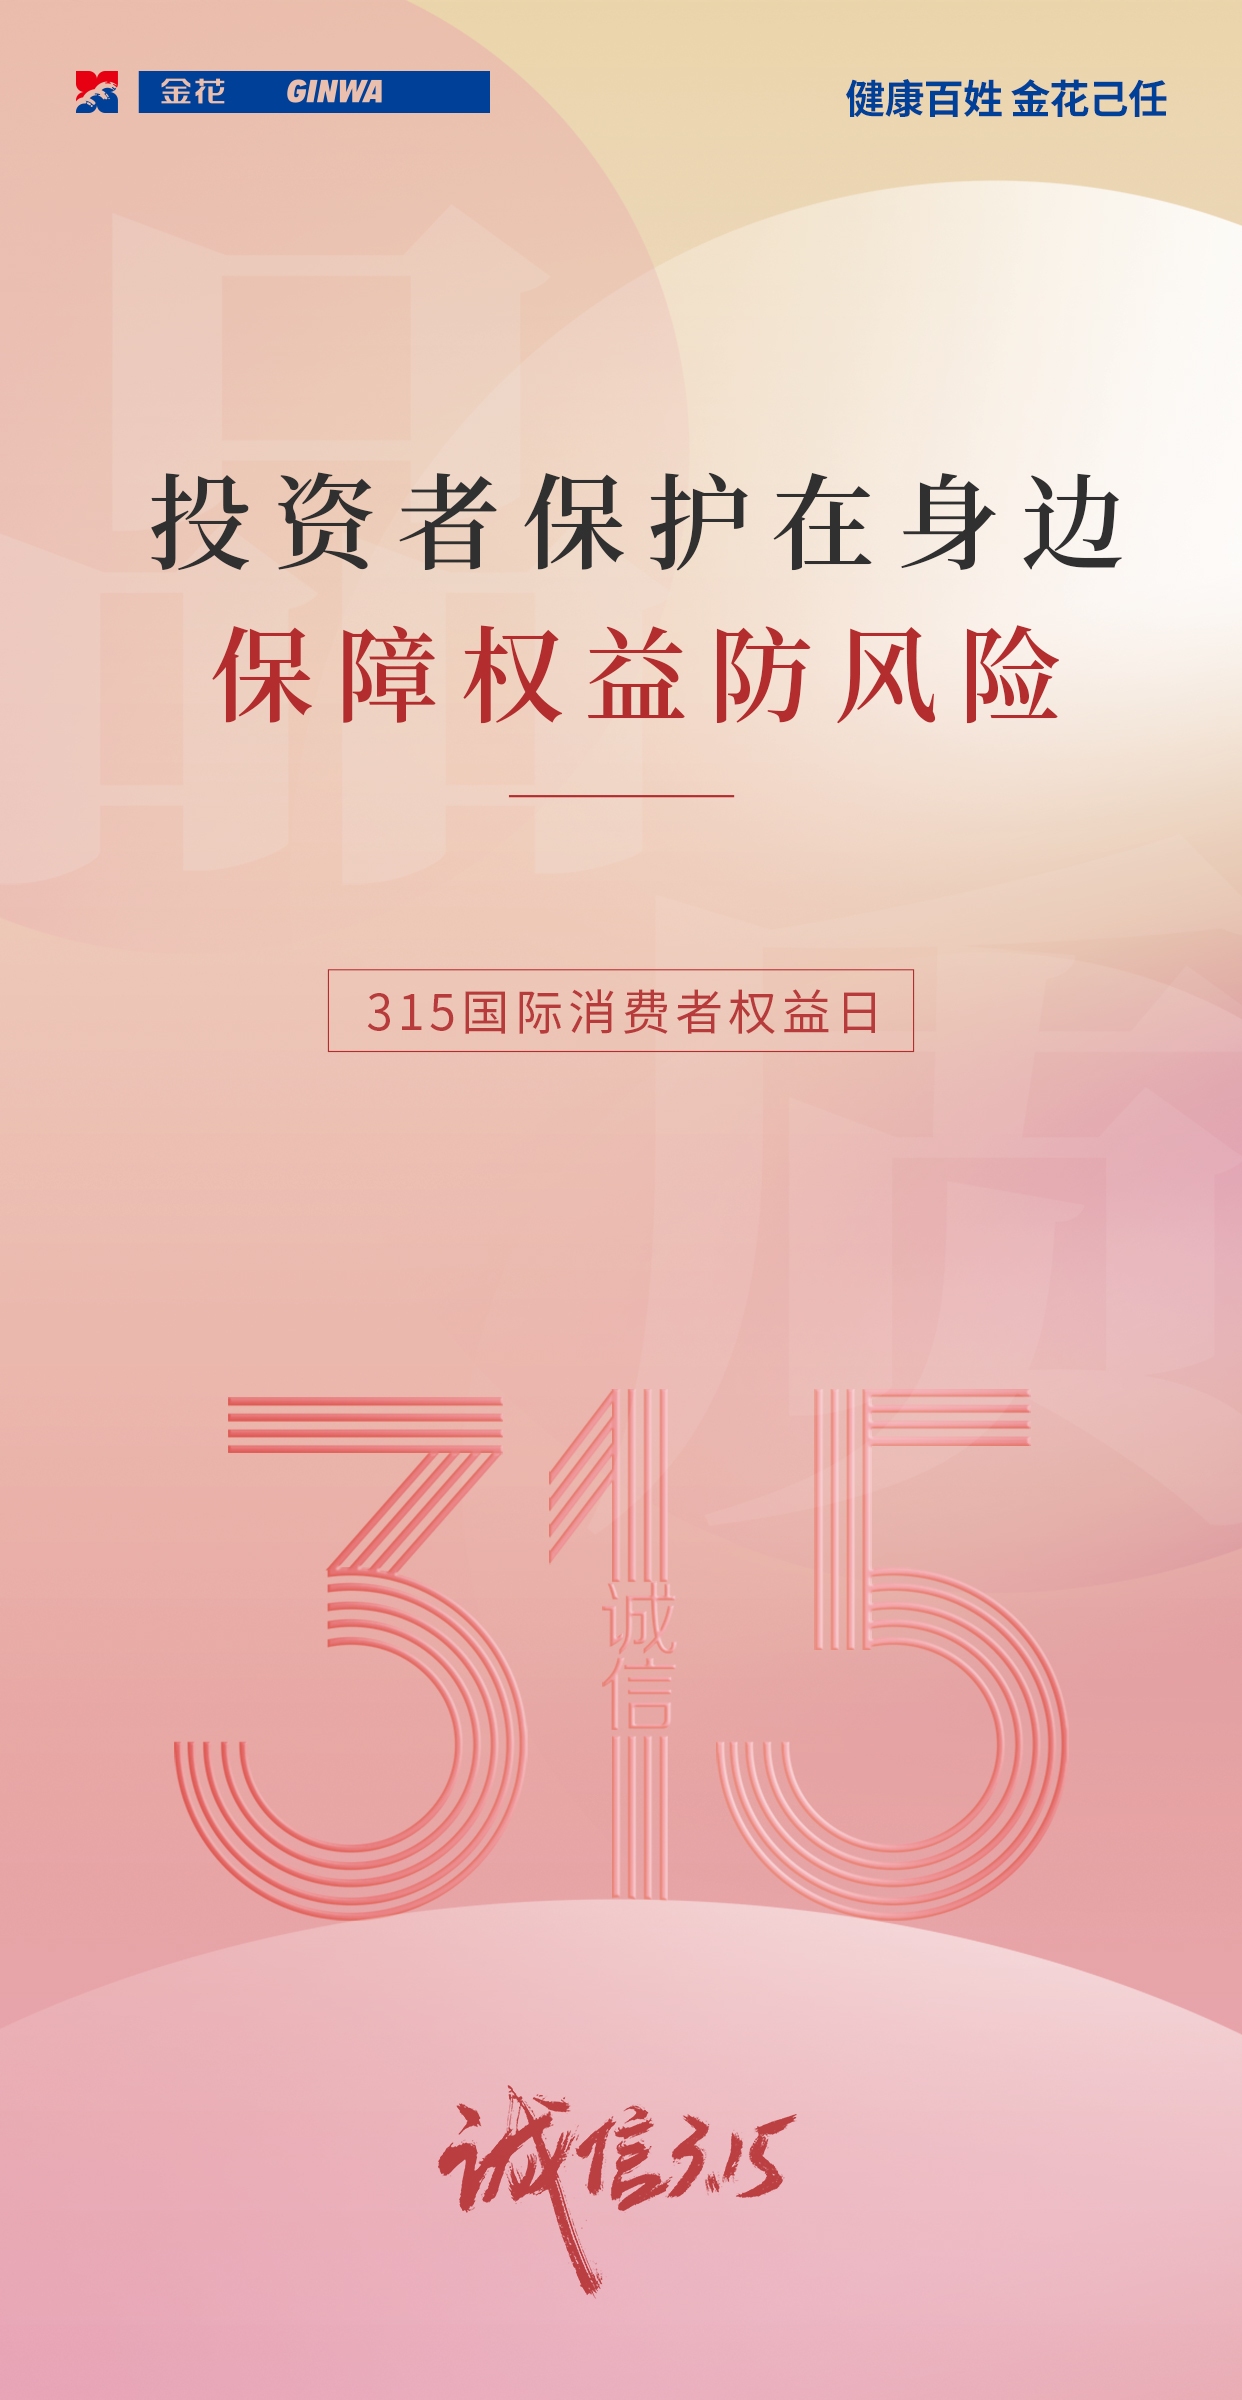 【3.15国际消费者权益日】中国证监会投资者保护典型案例